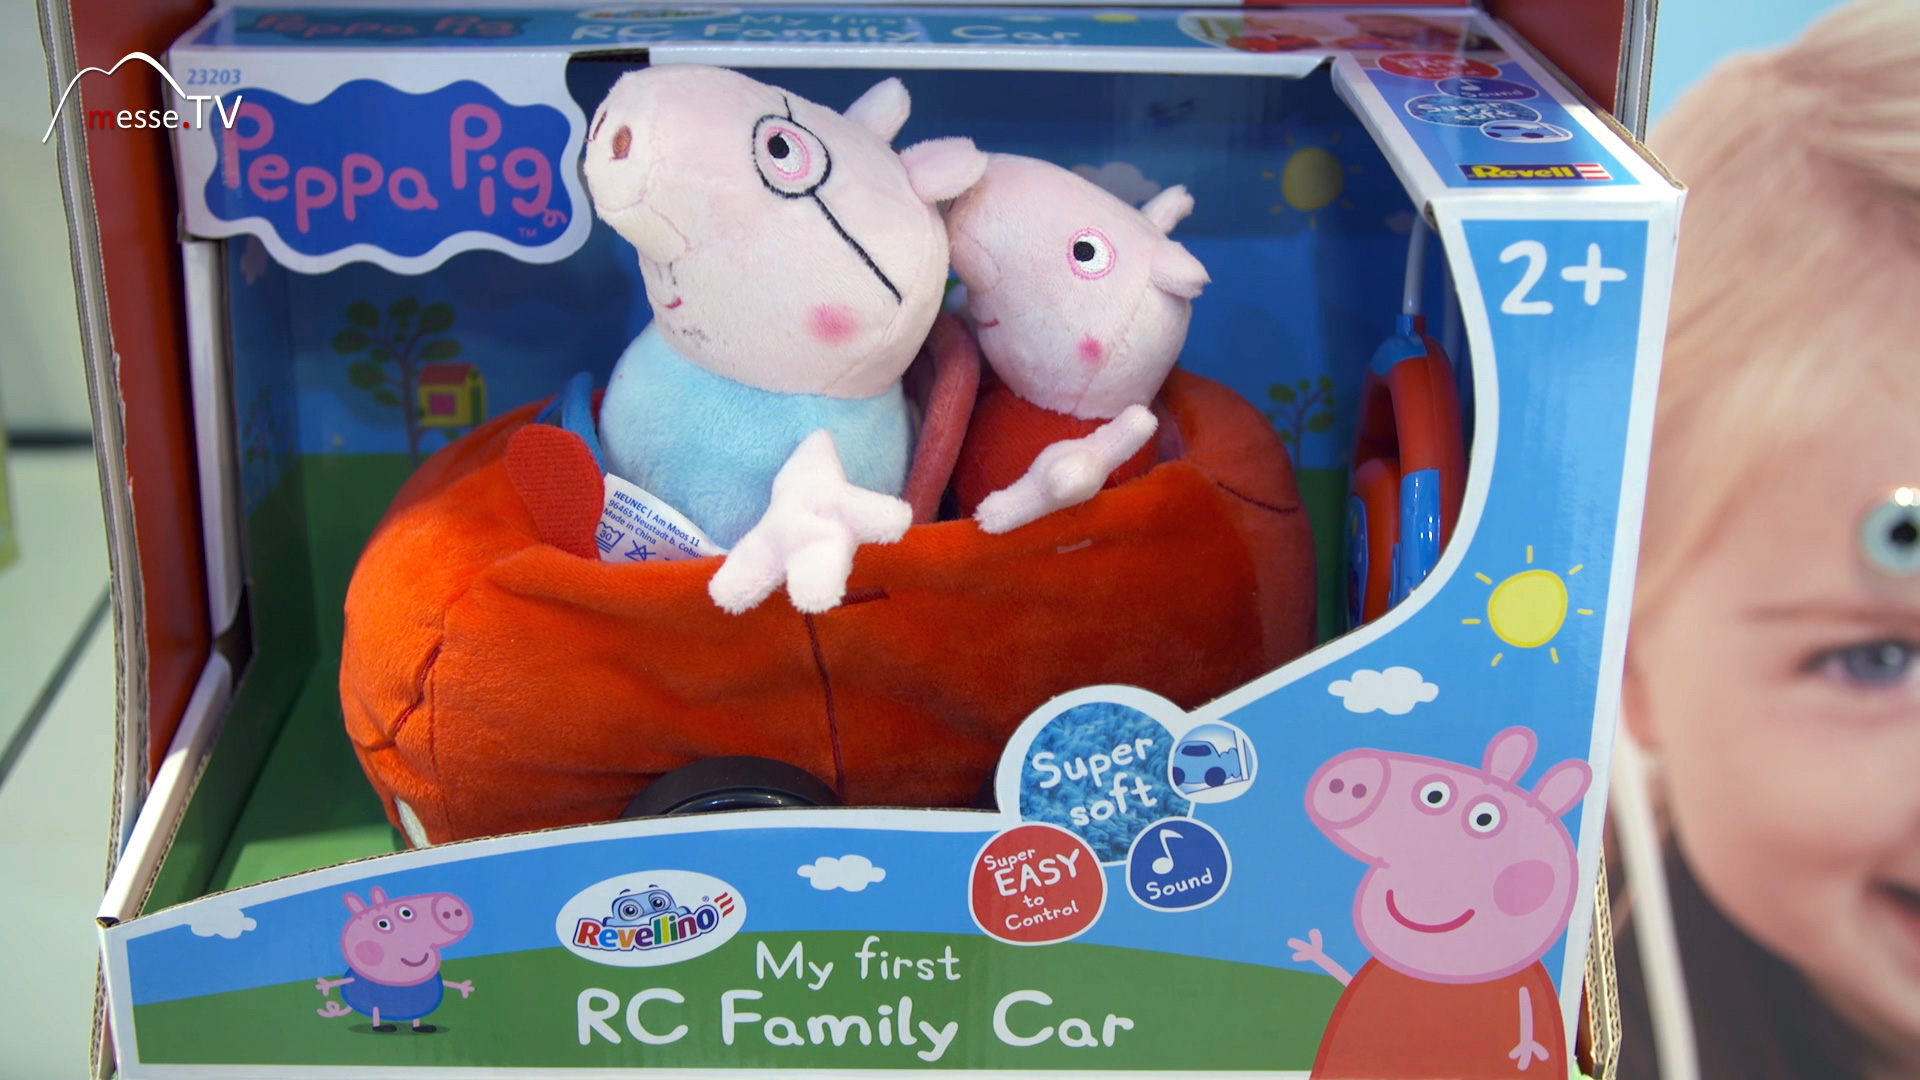 RC Auto aus Pluesch mit Peppa Pig Kuscheltier